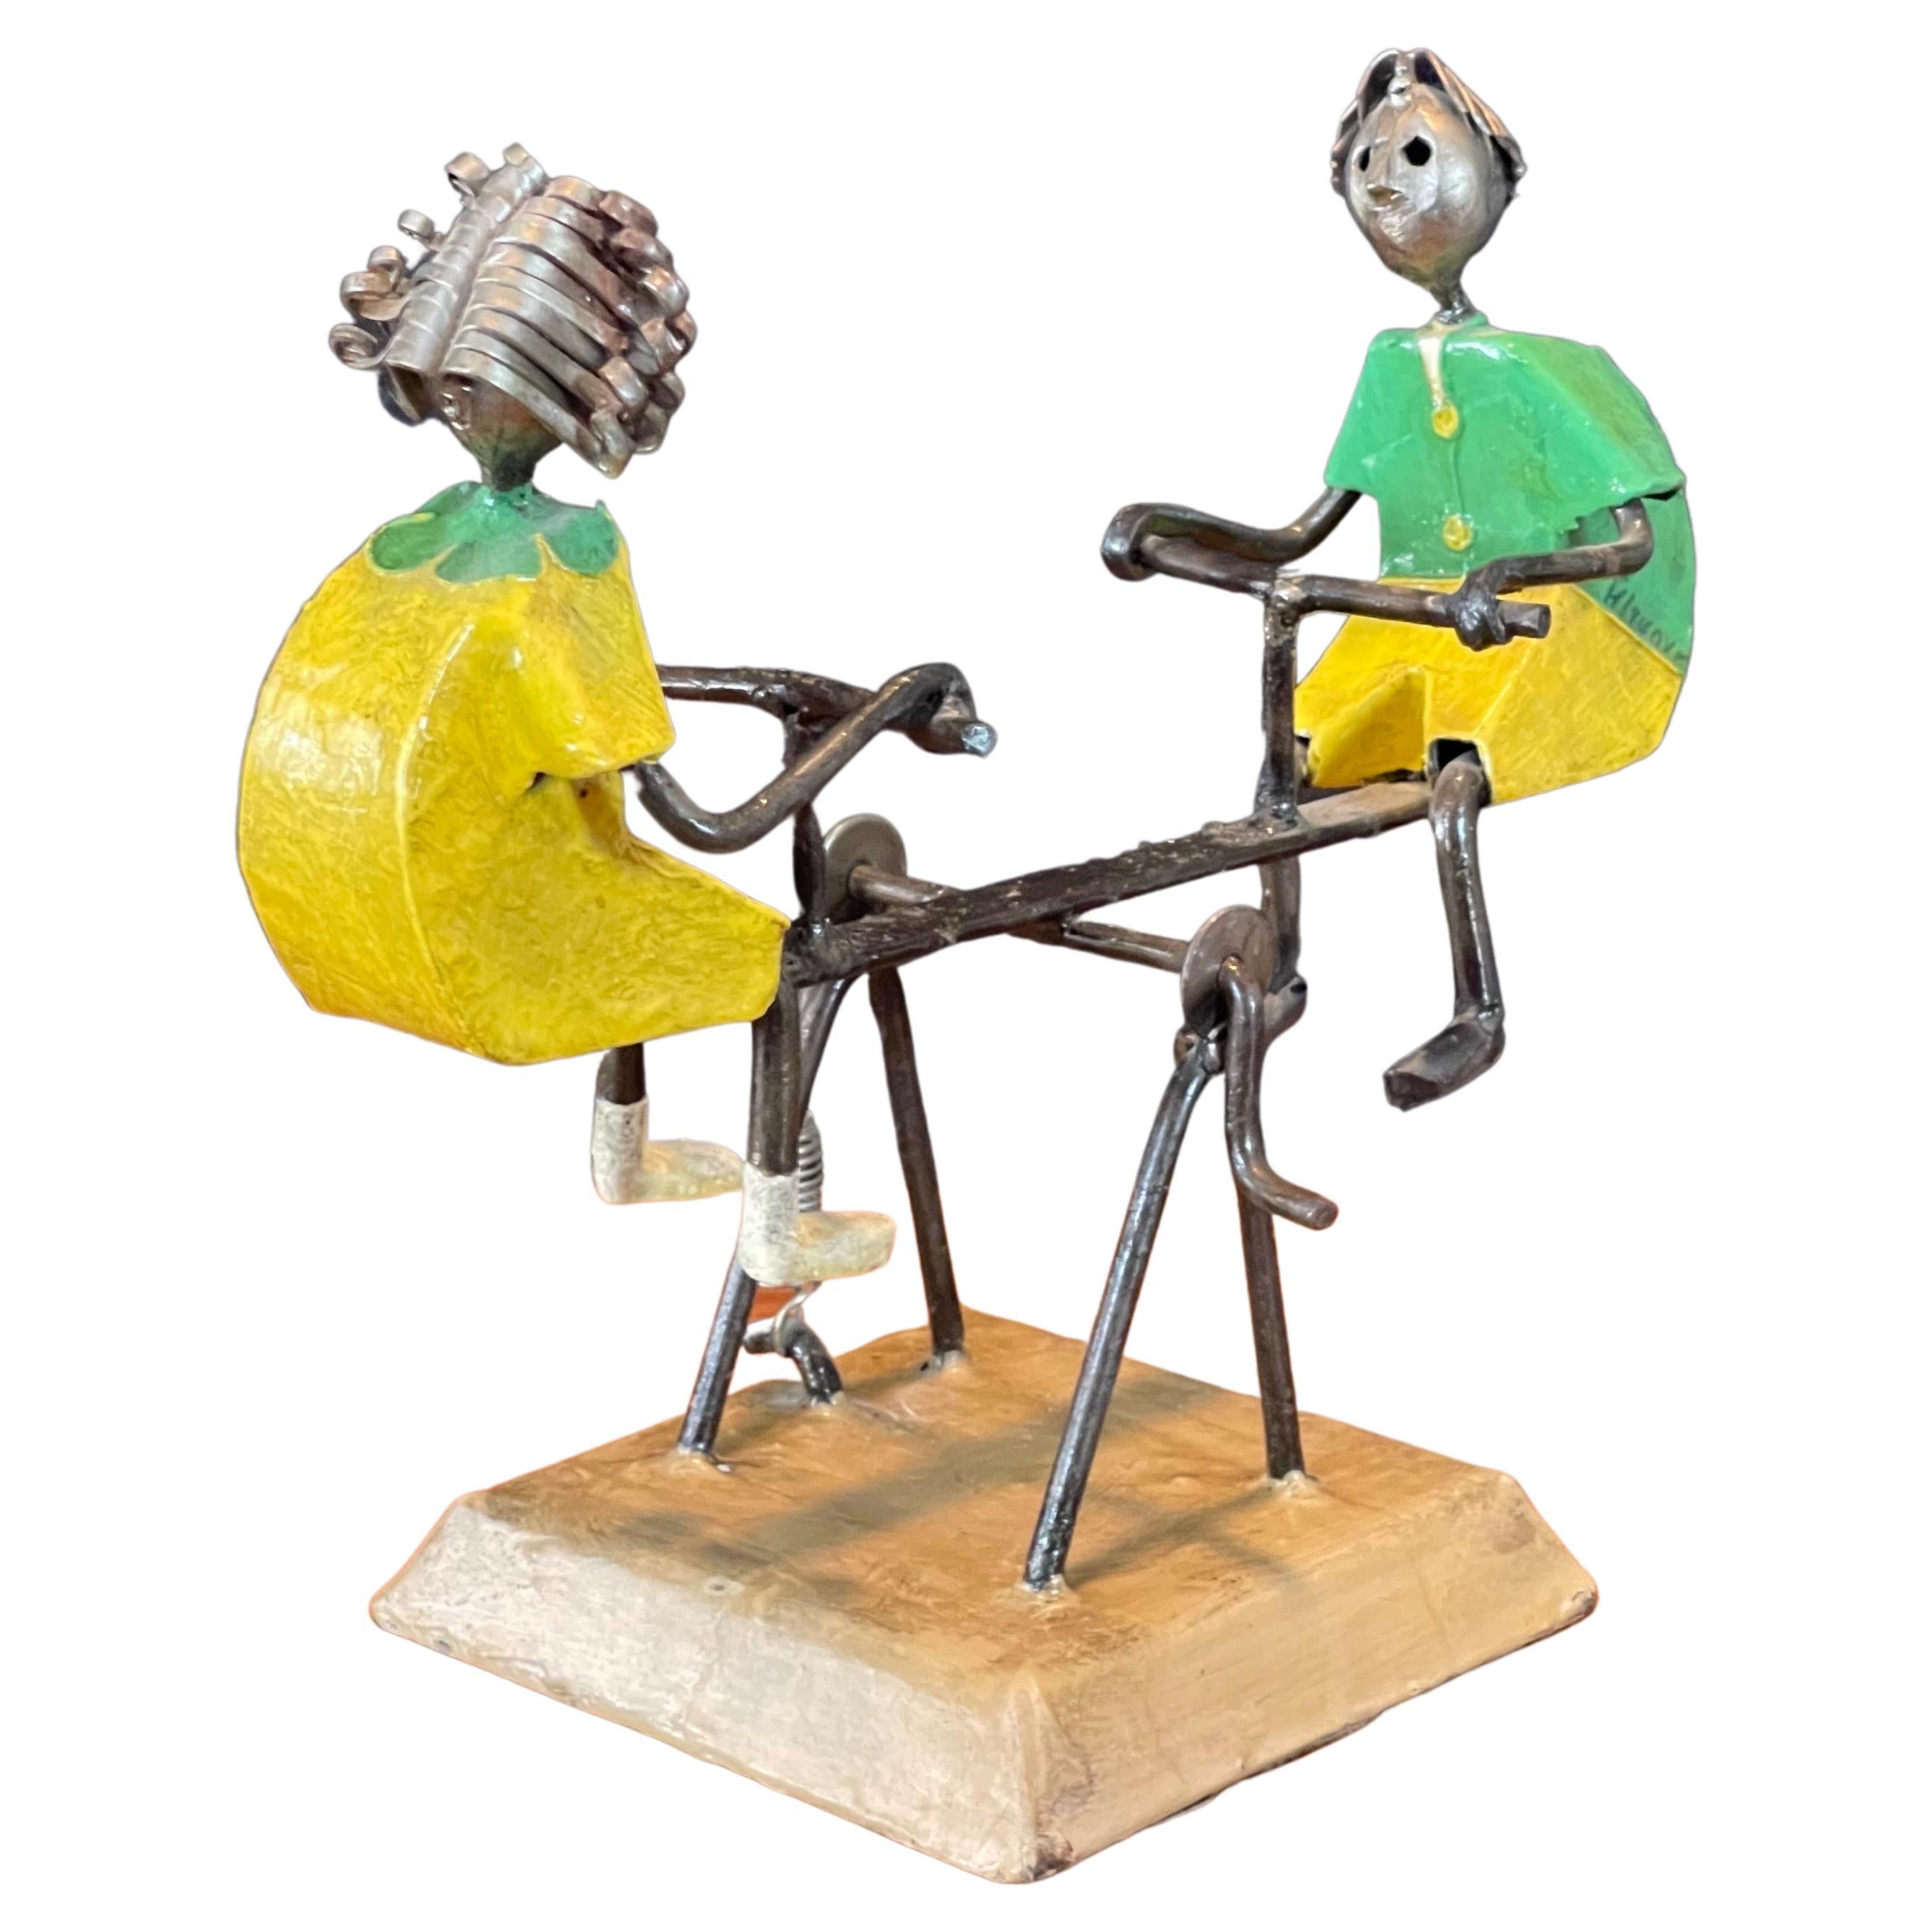 Eklektische, handbemalte Metallwippe oder Wippe des aufgeführten mexikanischen Künstlers Manuel Felguerez, ca. 1970er Jahre  Die Skulptur hat einen kleinen Griff und einen Federmechanismus, der es ihr ermöglicht, auf und ab zu 